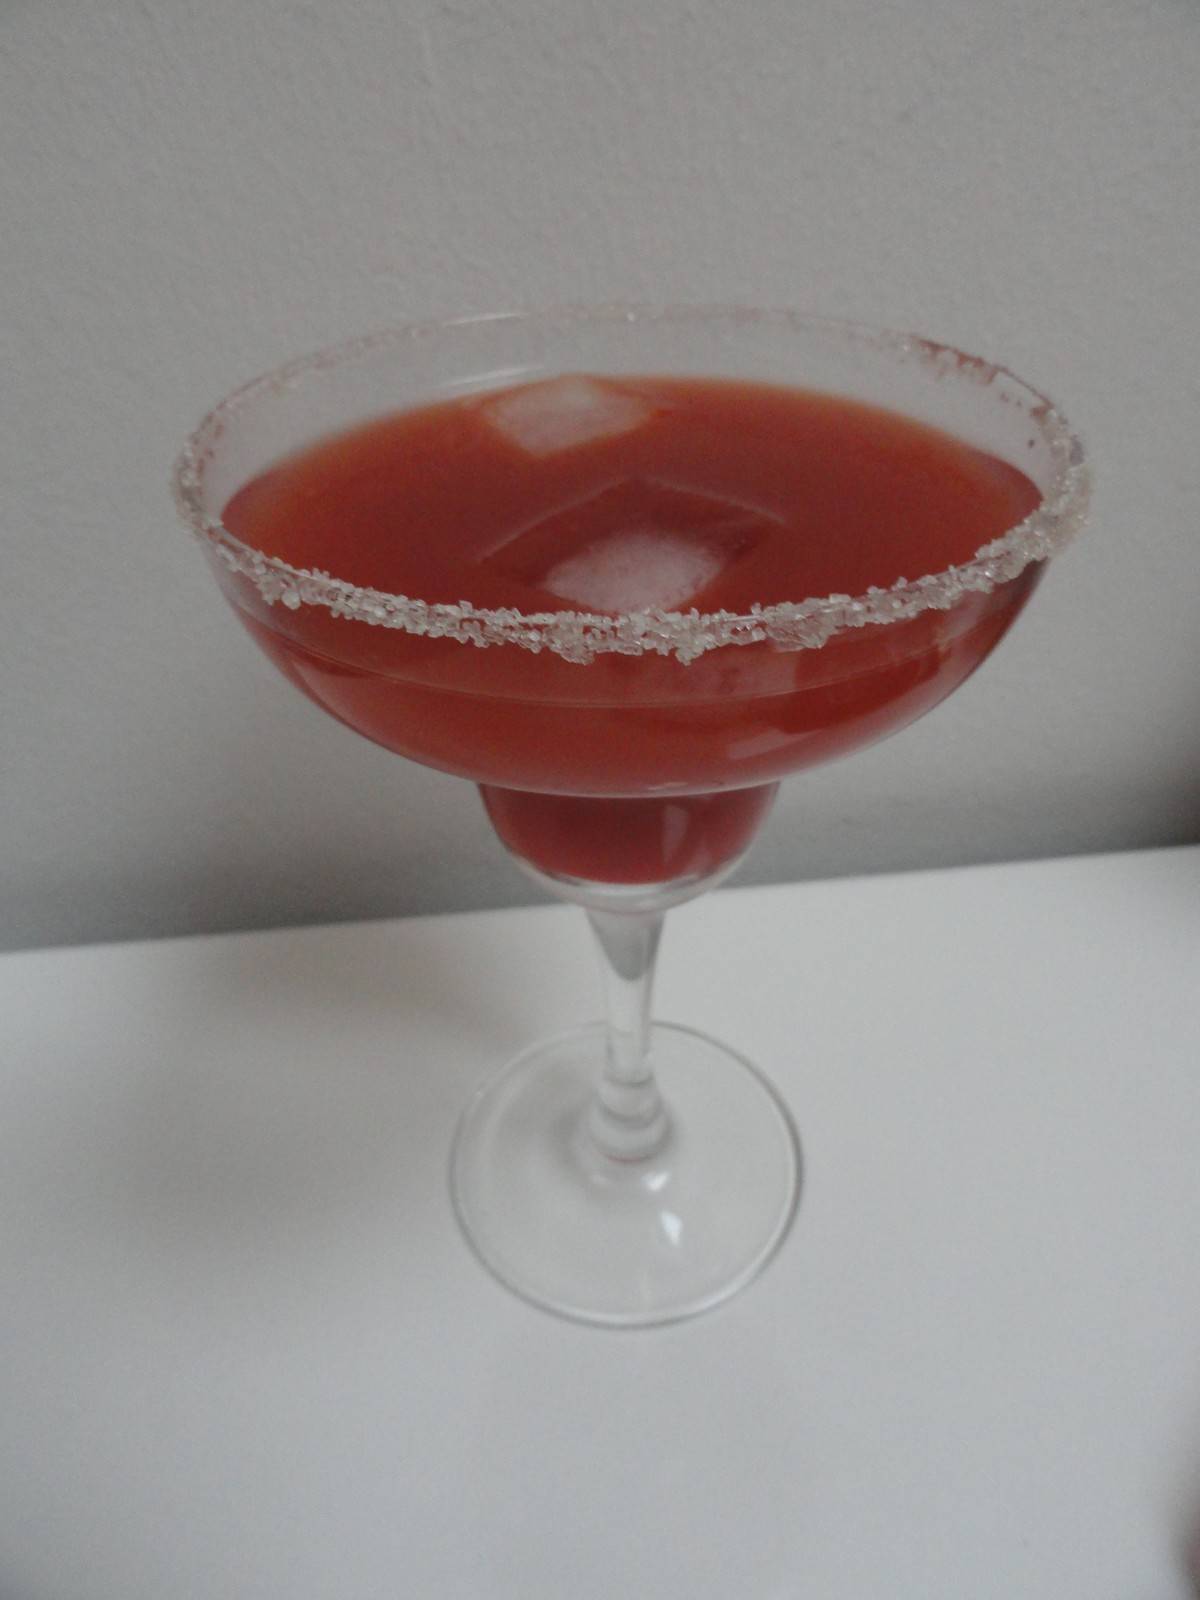 Strawberry-Margarita